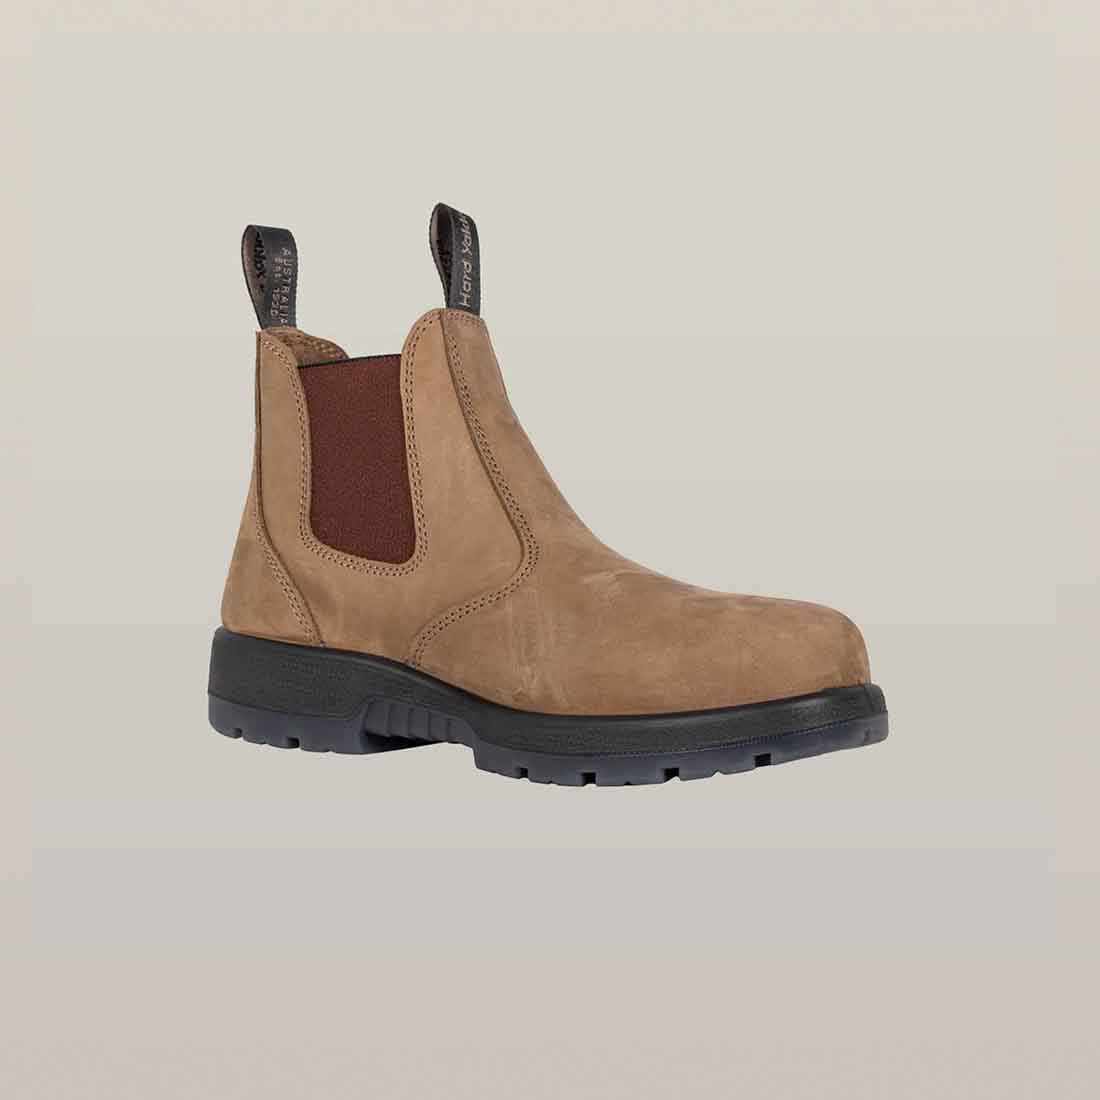 Hard Yakka Outback Steel Toe Light Brown Safety Dealer Boots